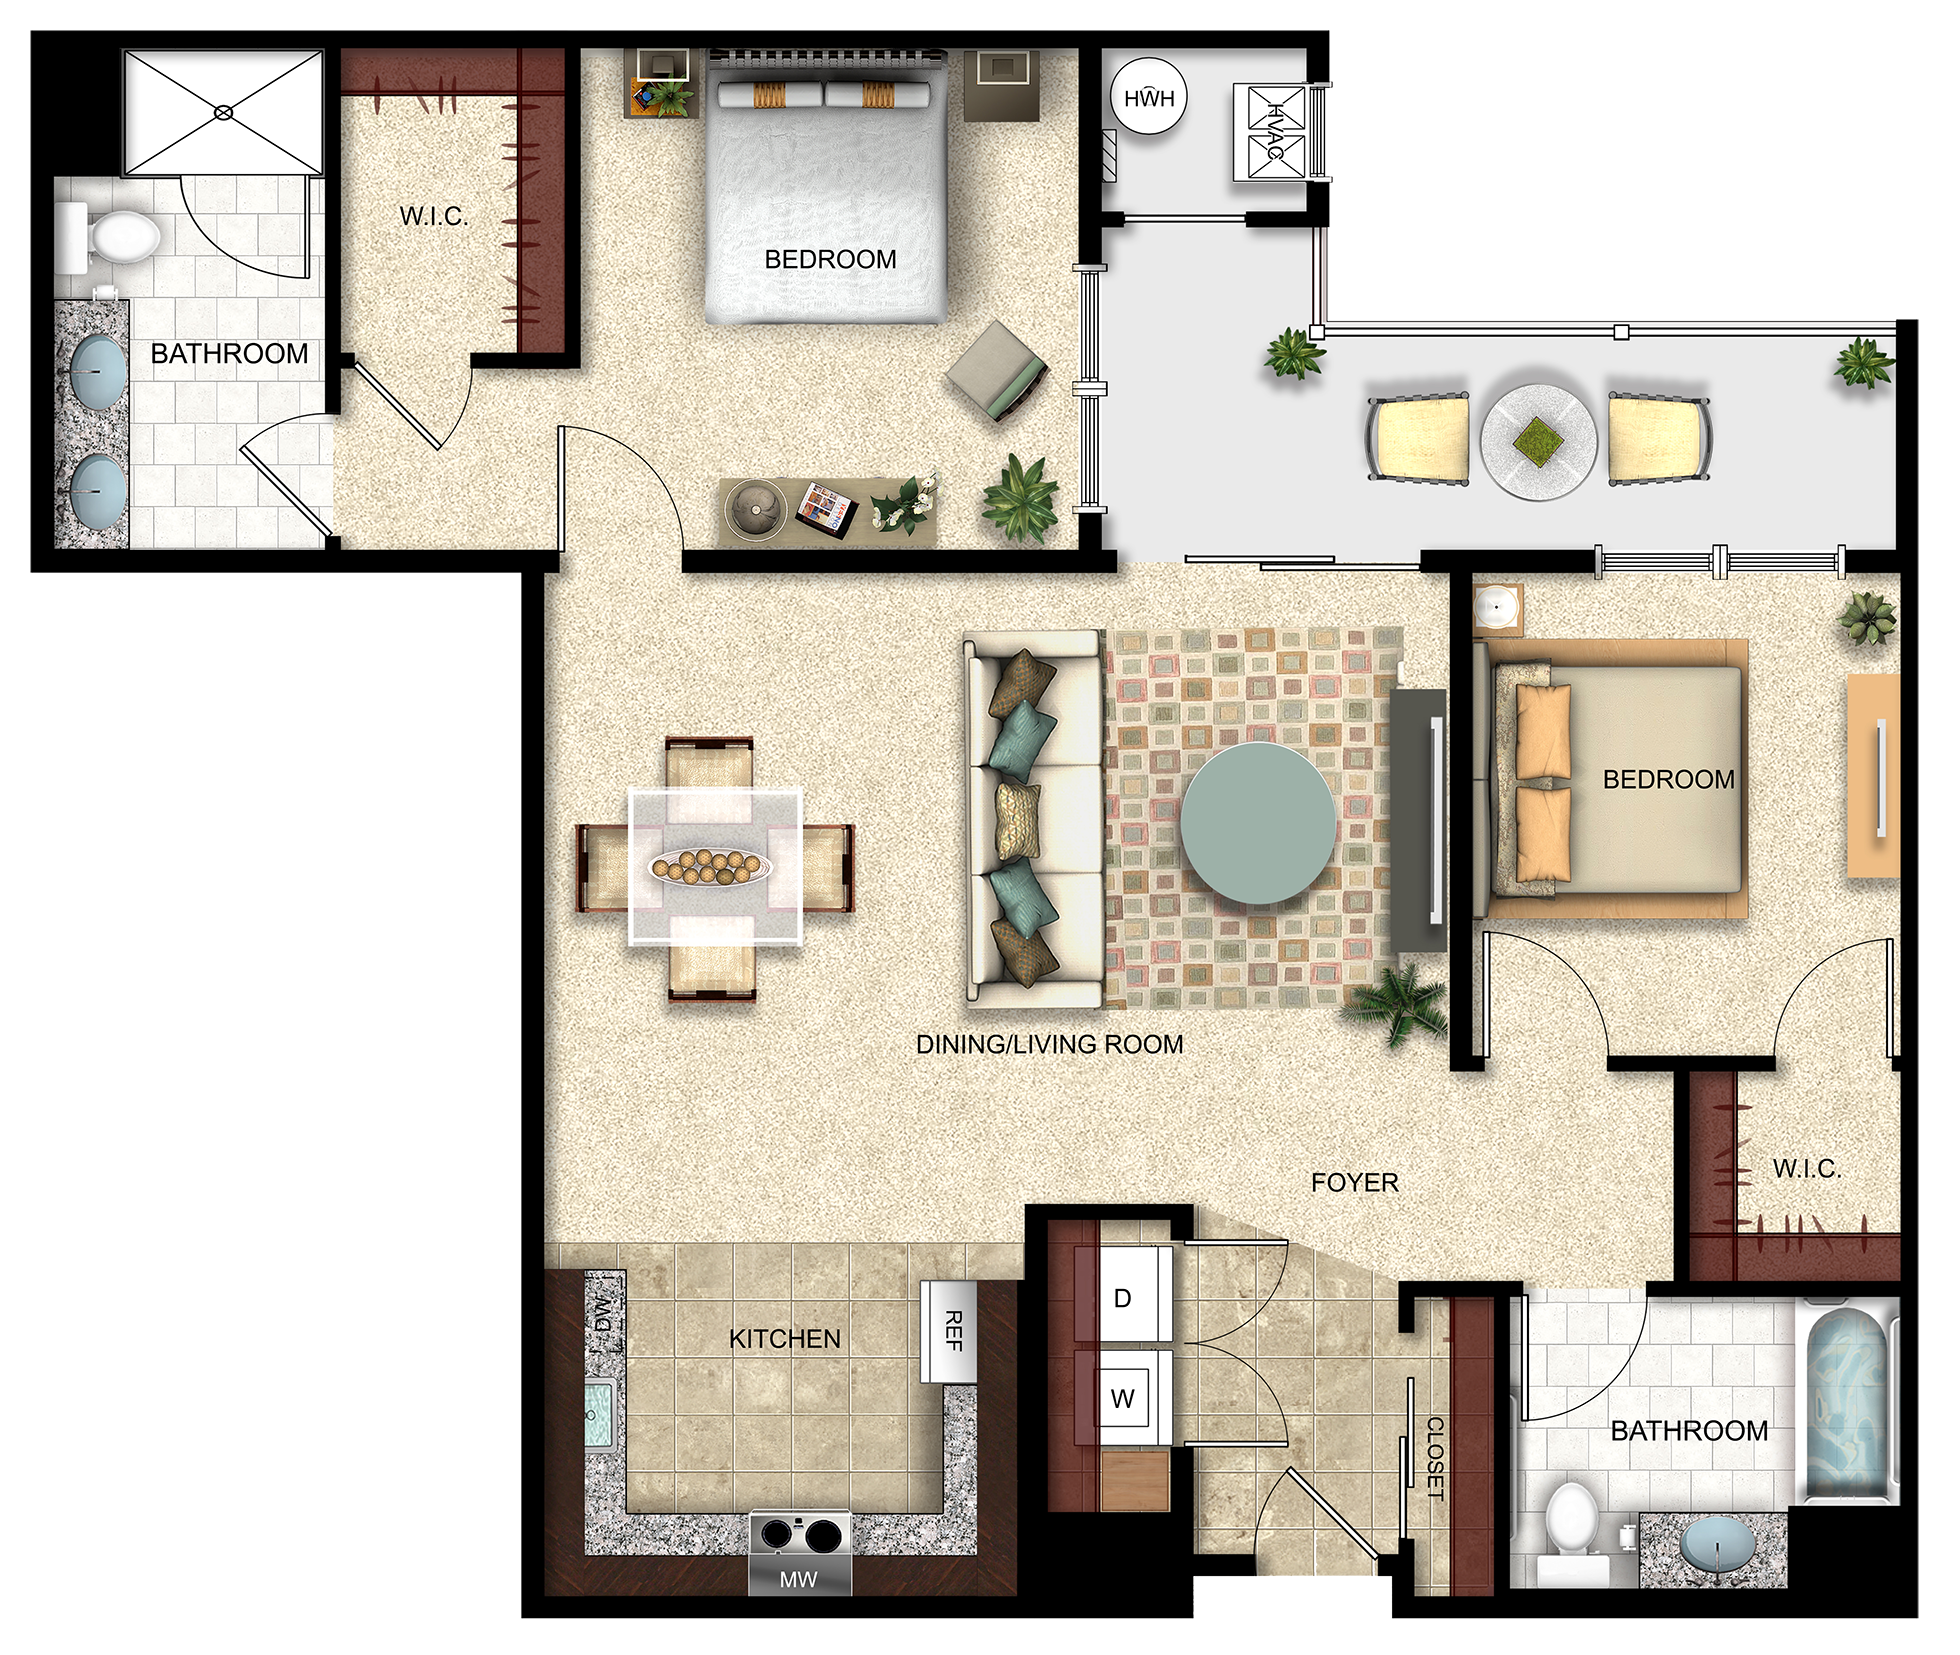 Two bedroom floor plan at the Xchange in Secaucus NJ